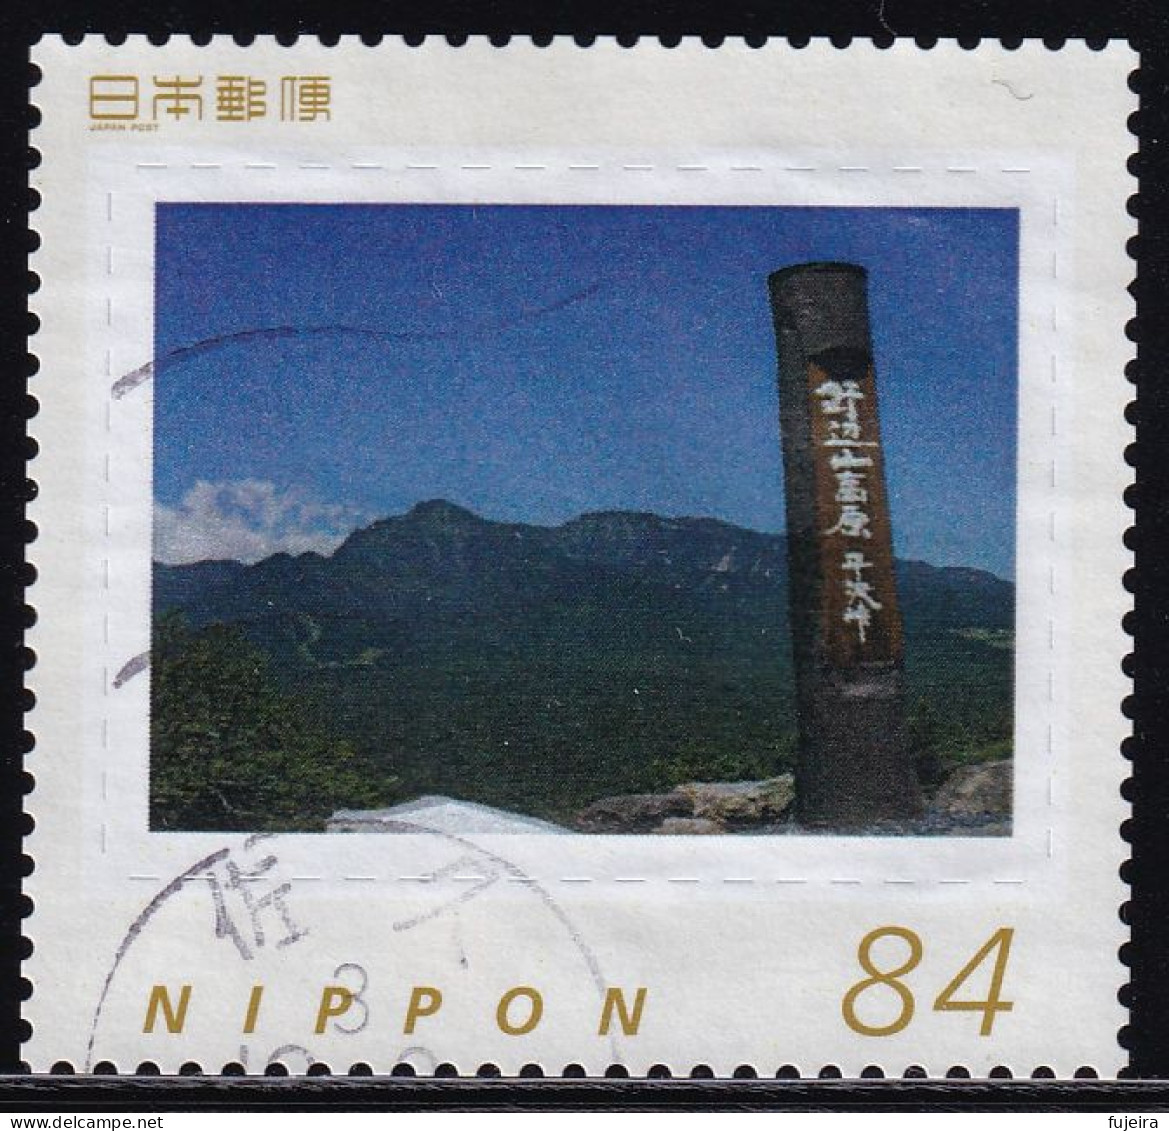 Japan Personalized Stamp, Nobeyama Highland (jpw0048) Used - Usados